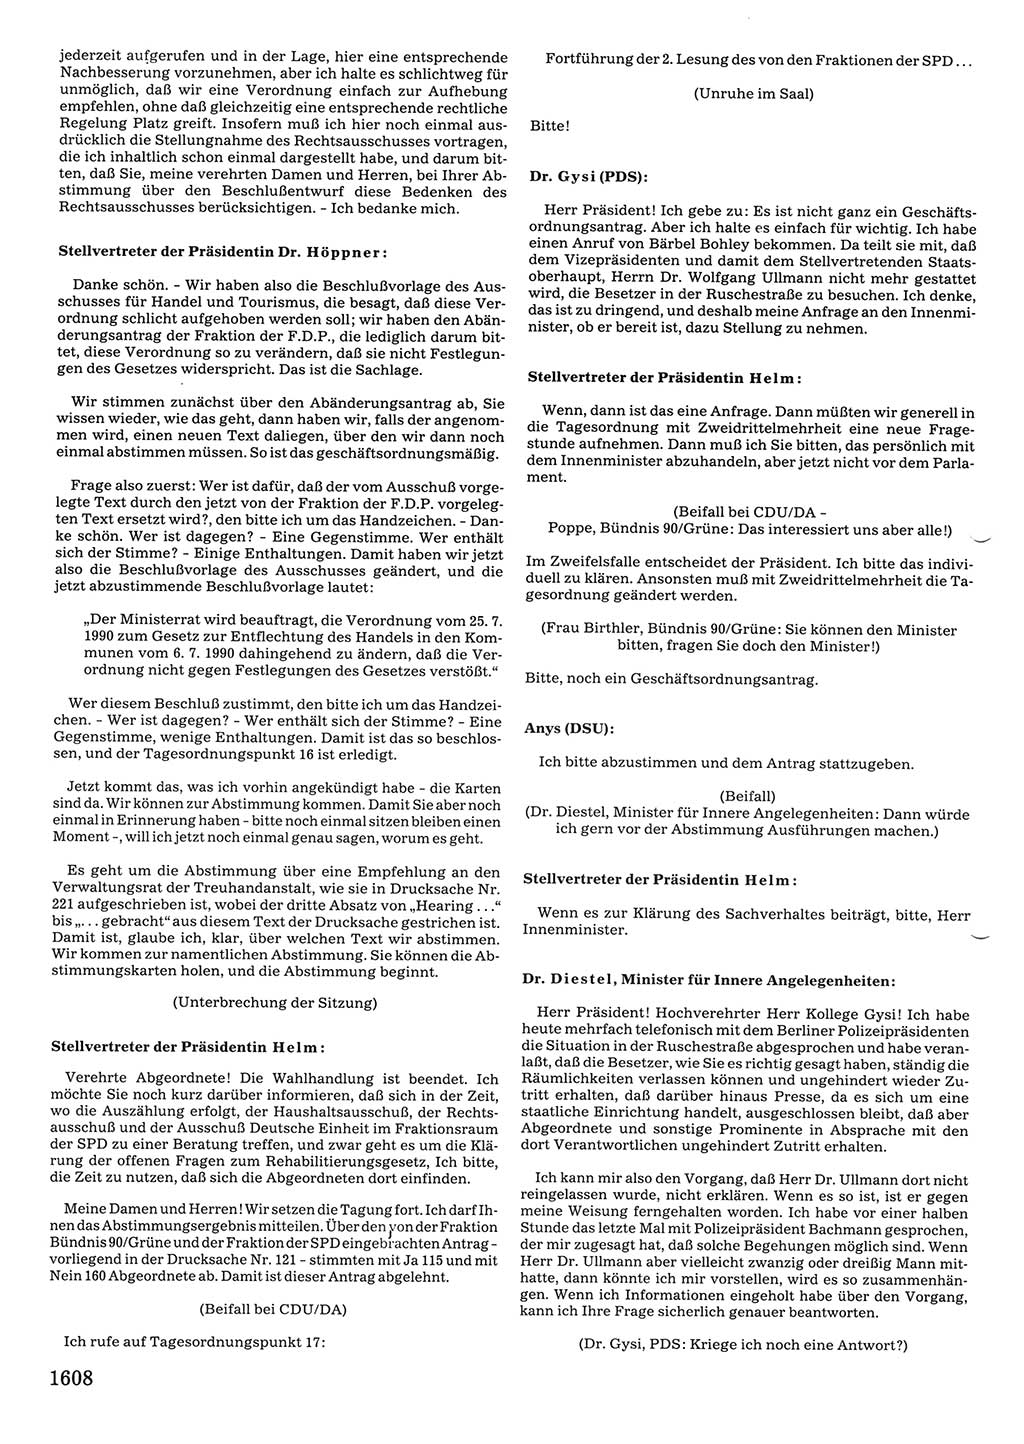 Tagungen der Volkskammer (VK) der Deutschen Demokratischen Republik (DDR), 10. Wahlperiode 1990, Seite 1608 (VK. DDR 10. WP. 1990, Prot. Tg. 1-38, 5.4.-2.10.1990, S. 1608)